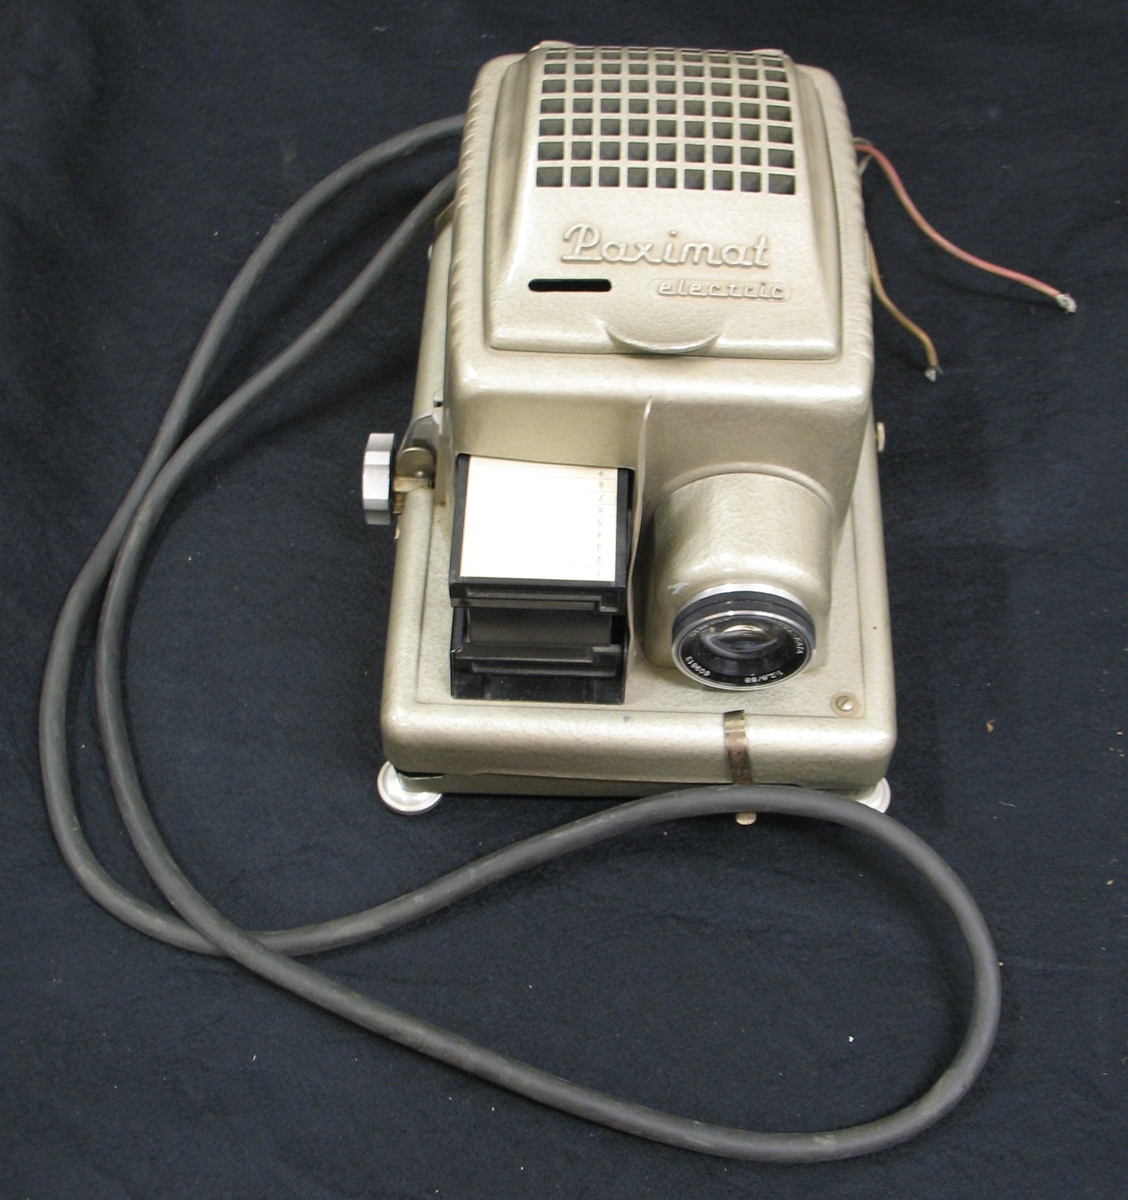 x Paximat Nr 544870 electric. Objektiv: Proj-Kata 609813   1:2. 8/85.

Projektorn tidigare använd på museet.